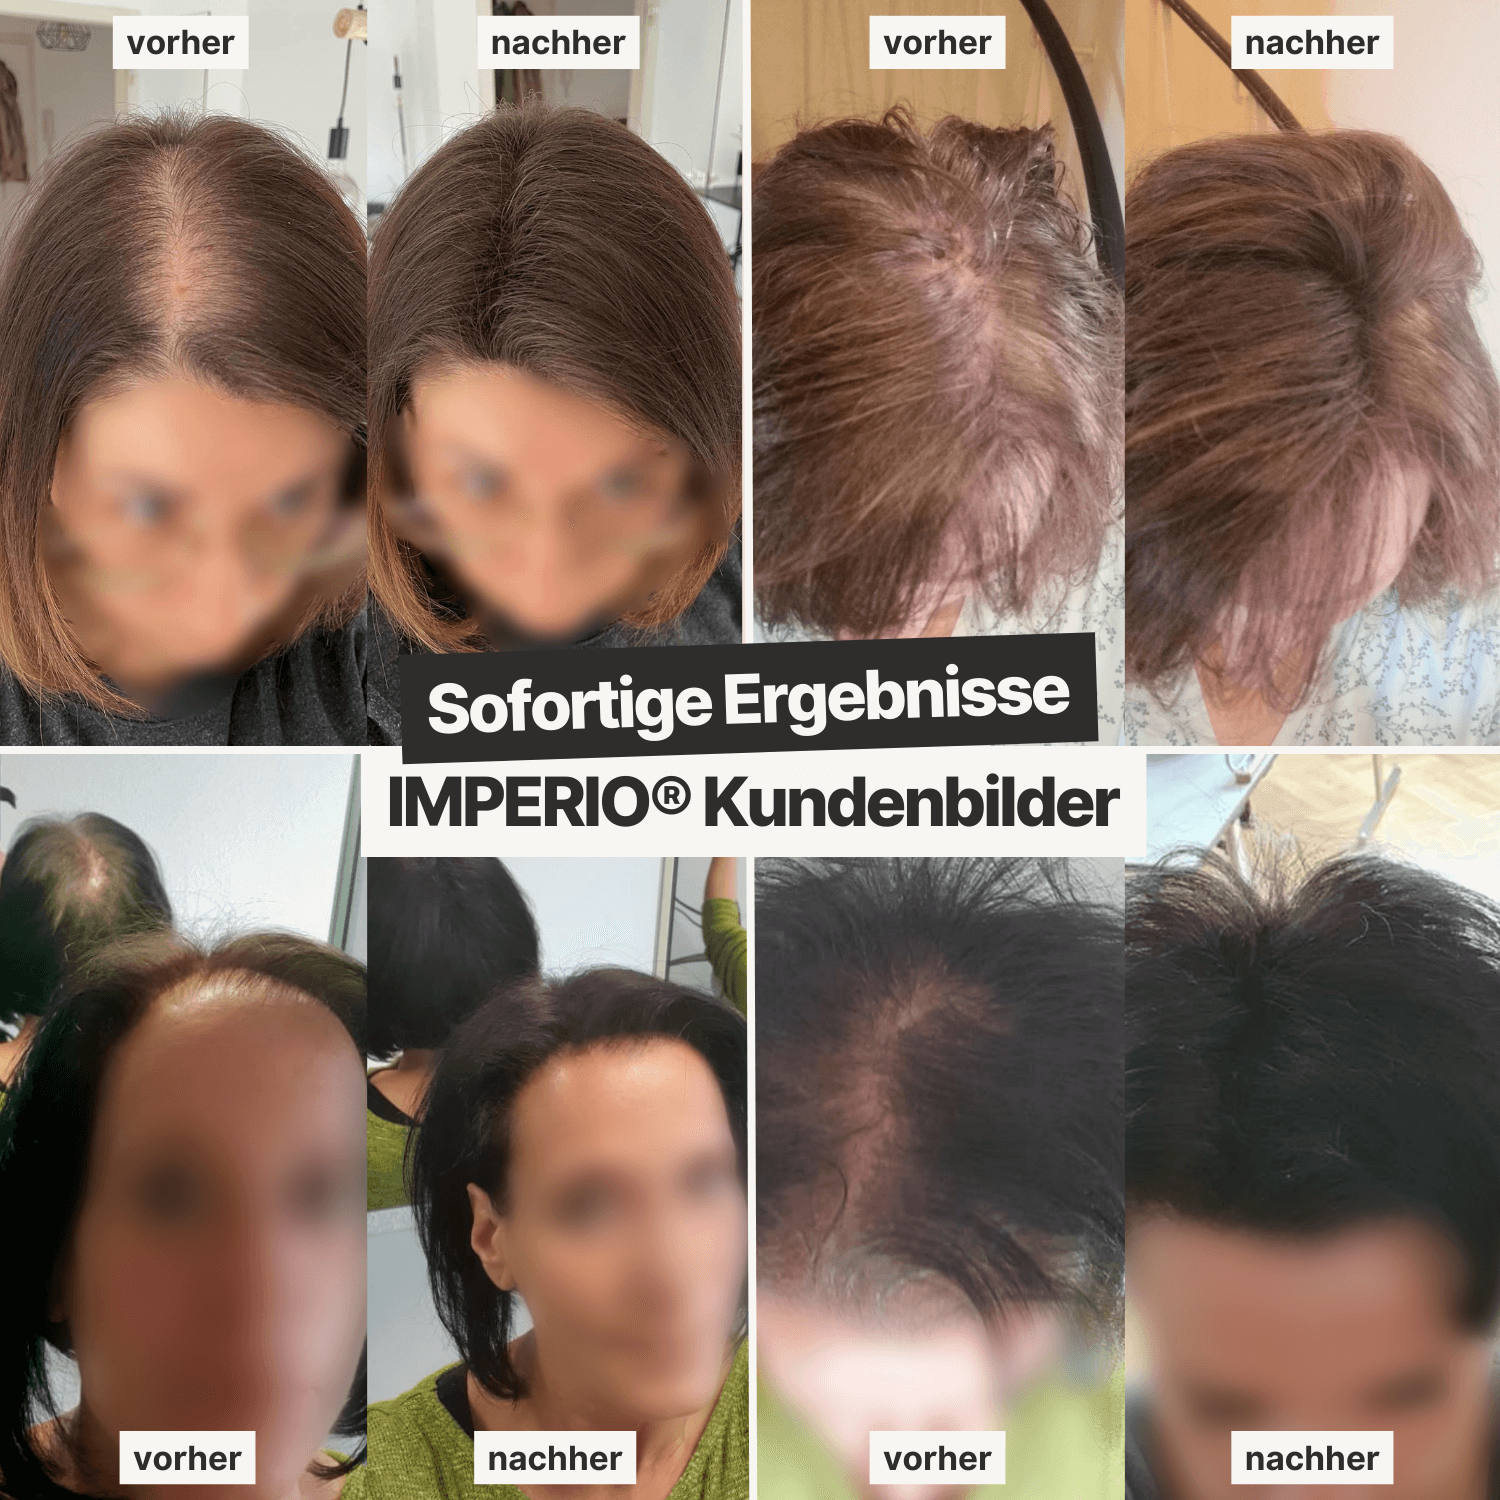 IMPERIO® Streuhaar | Volles Haar in 20 Sekunden